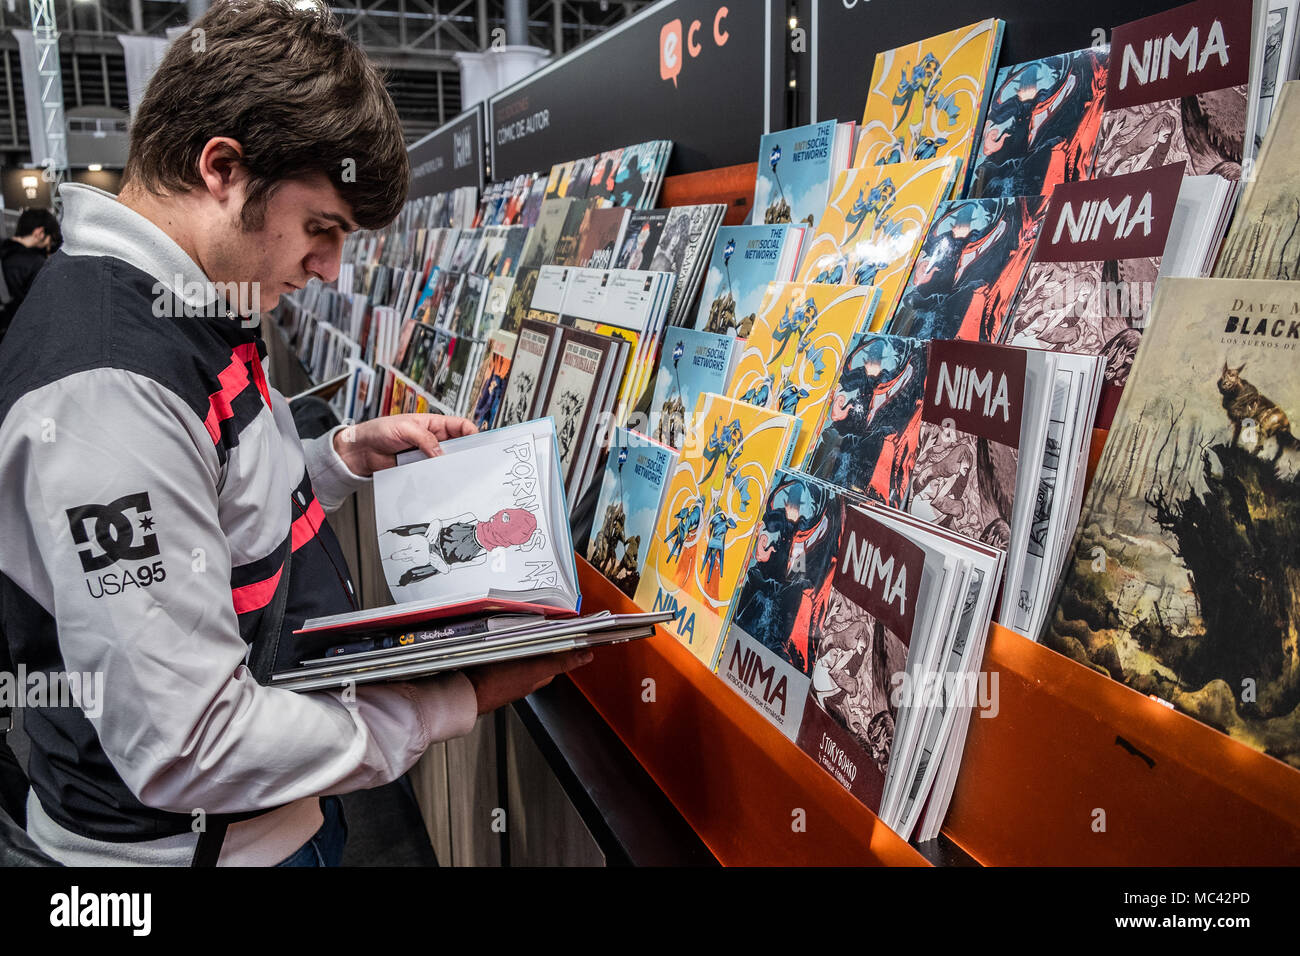 Un jeune visiteur vu la sélection de bandes dessinées livres à acheter. Ouverture du 36e Salon International de la bande dessinée de Barcelone de 12e et 15e avril 2018 à Fira Barcelone Montjuïc. Banque D'Images